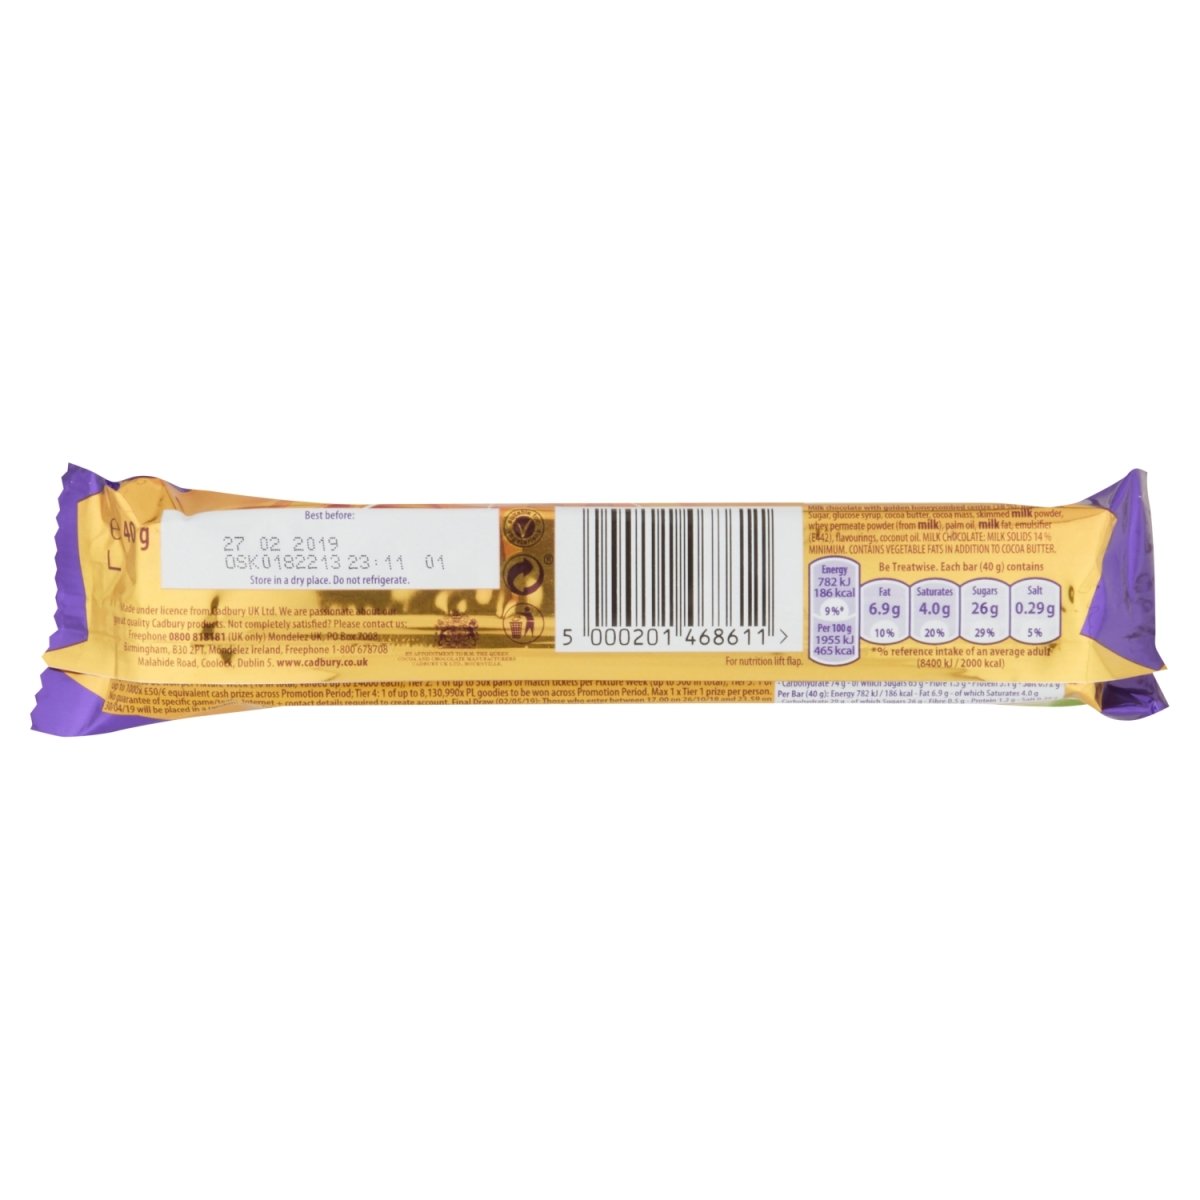 Cadbury Crunchie - Intamarque 5000201468611